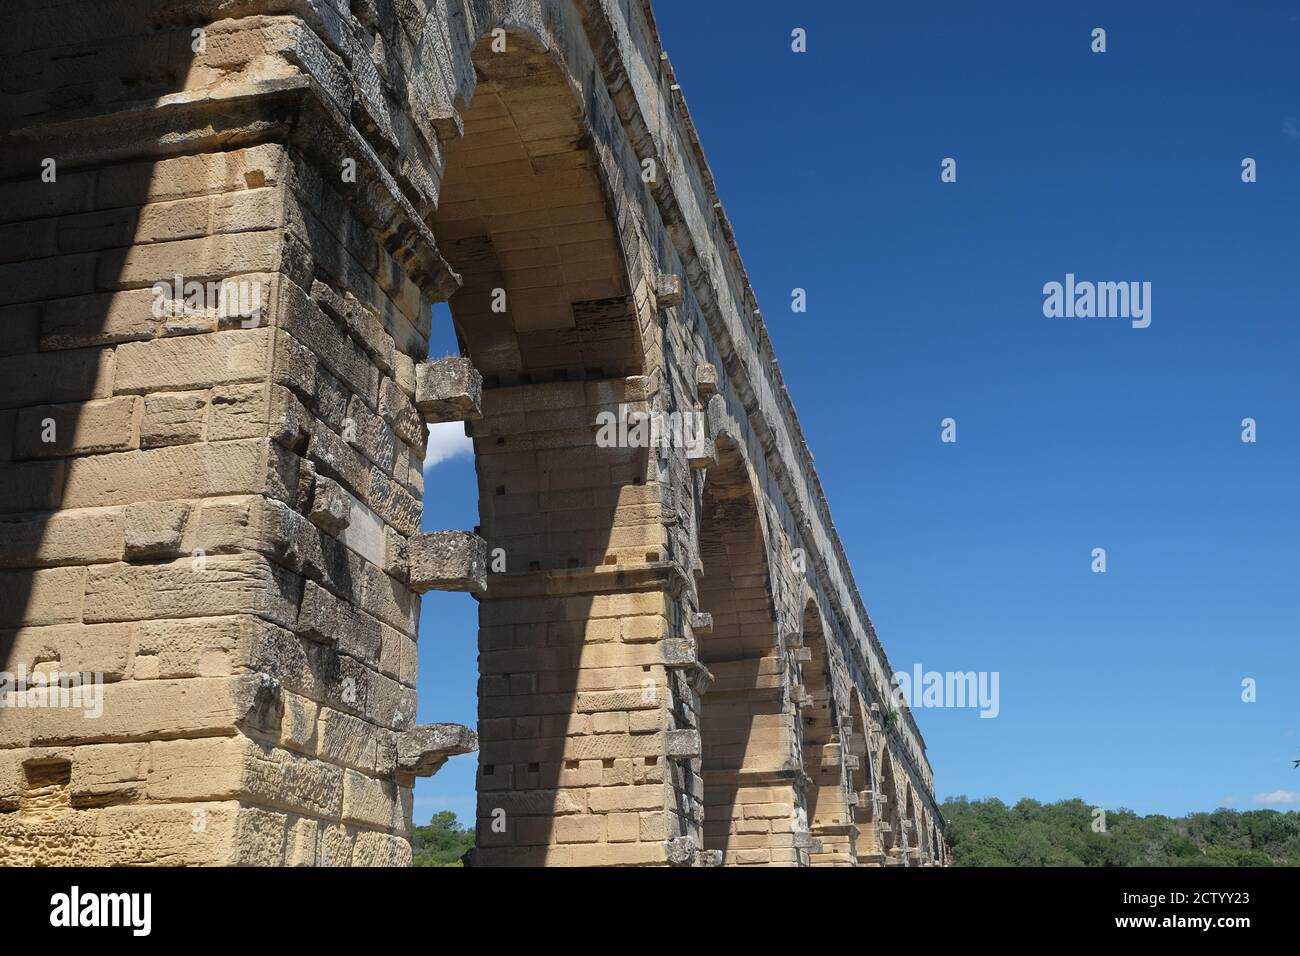 Pont du Gard dans le sud de la France - un des Les plus impressionnants aqueducs romains Banque D'Images